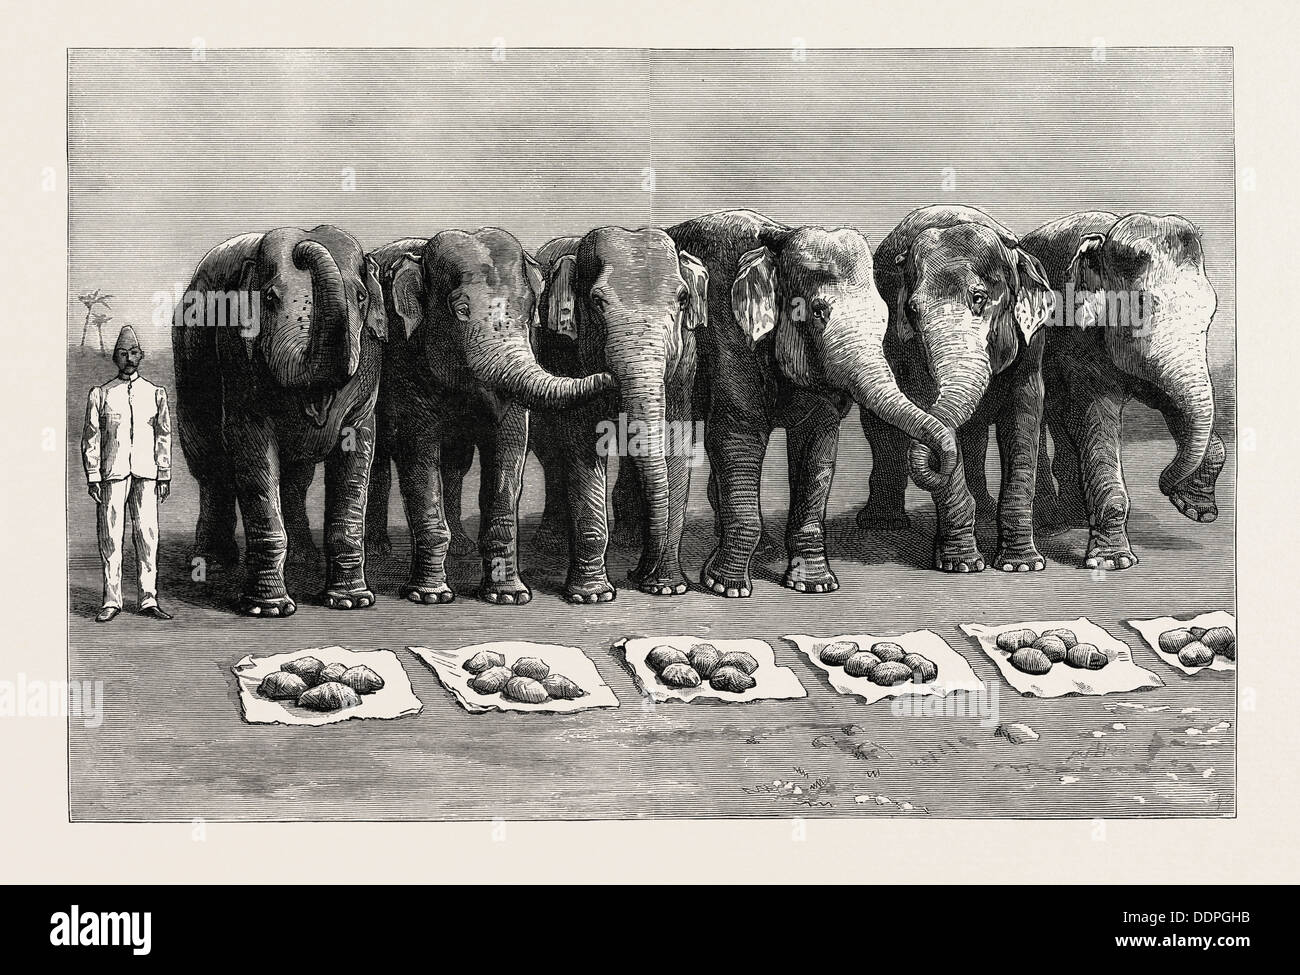 Gli elefanti IN INDIA, prima colazione di attesa per la alimentazione di parola, incisione 1890, immagine incisa, storia, arkheia Foto Stock